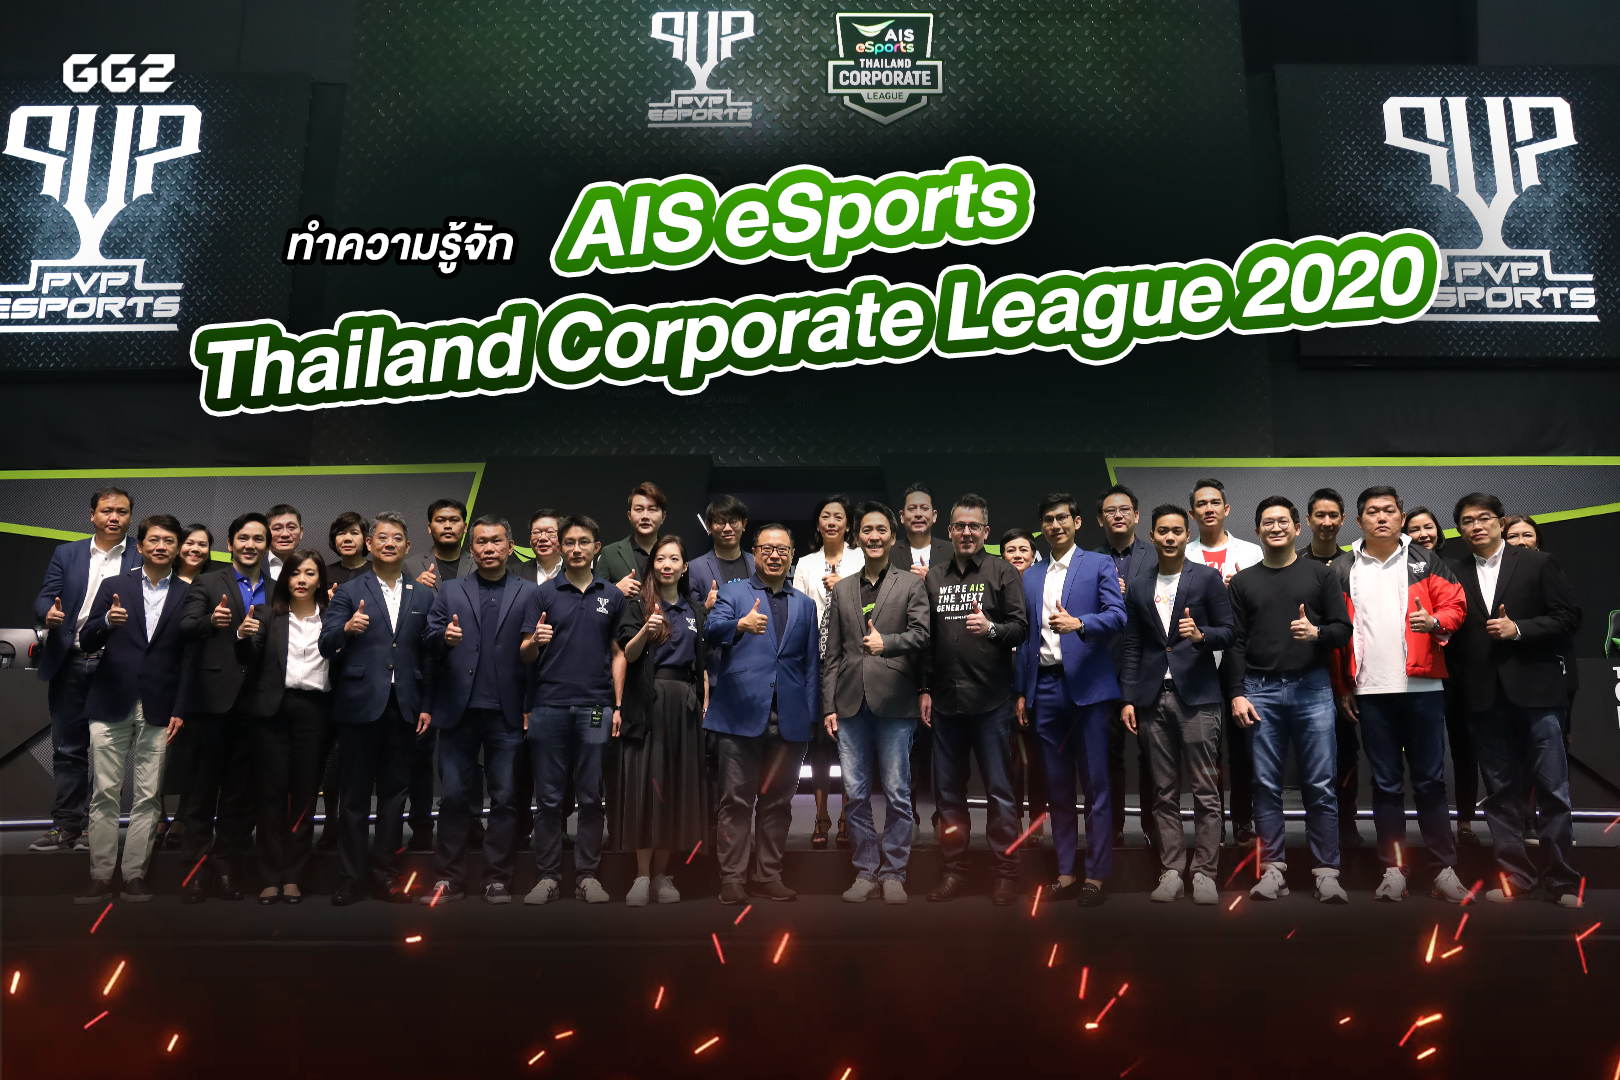 ทำความรู้จัก AIS eSports Thailand Corporate League 2020